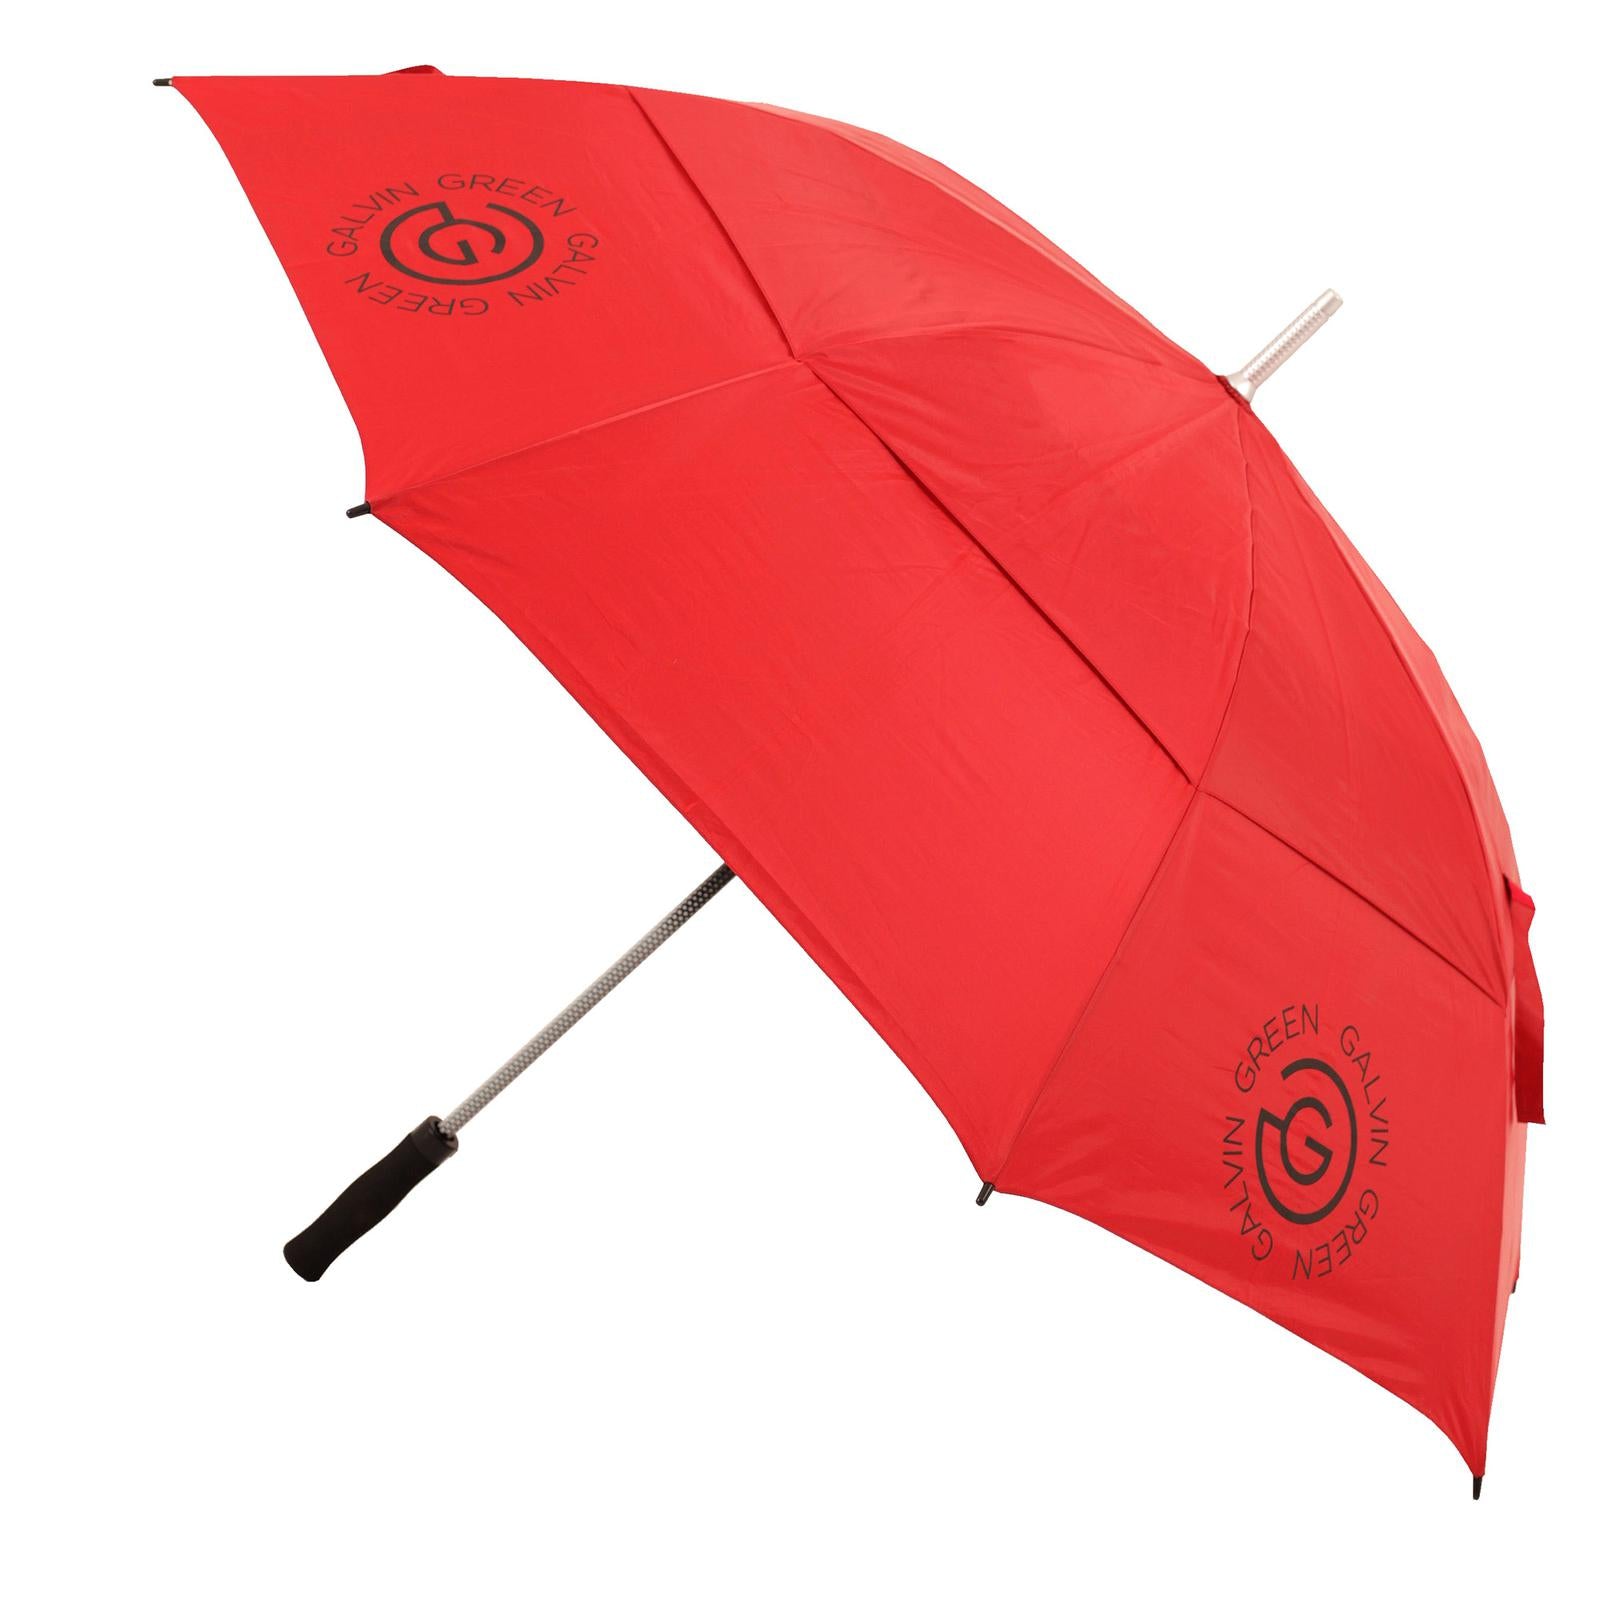 Red 'TROMB' 60" storm-proof golf umbrella